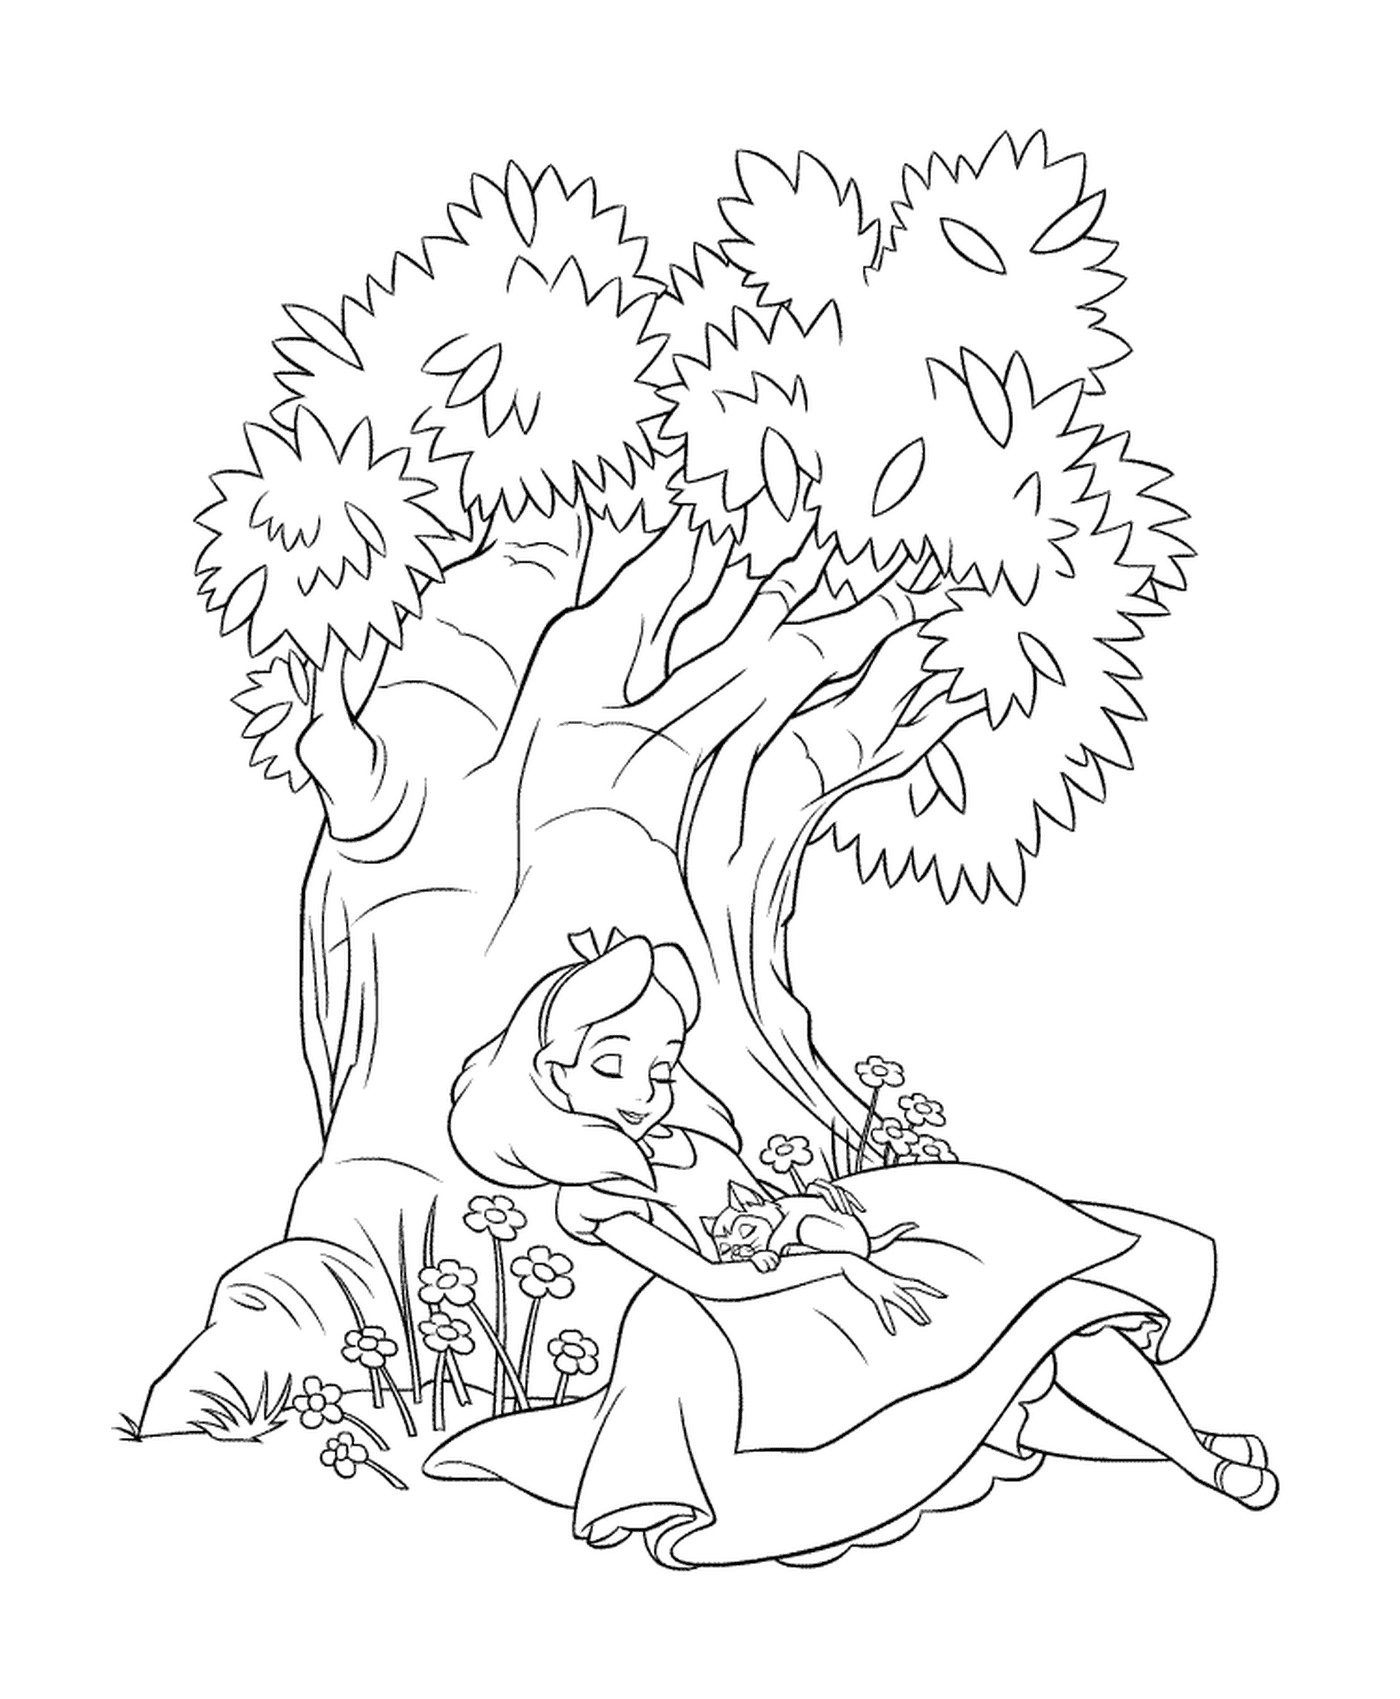  Una ragazza seduta sotto un albero 